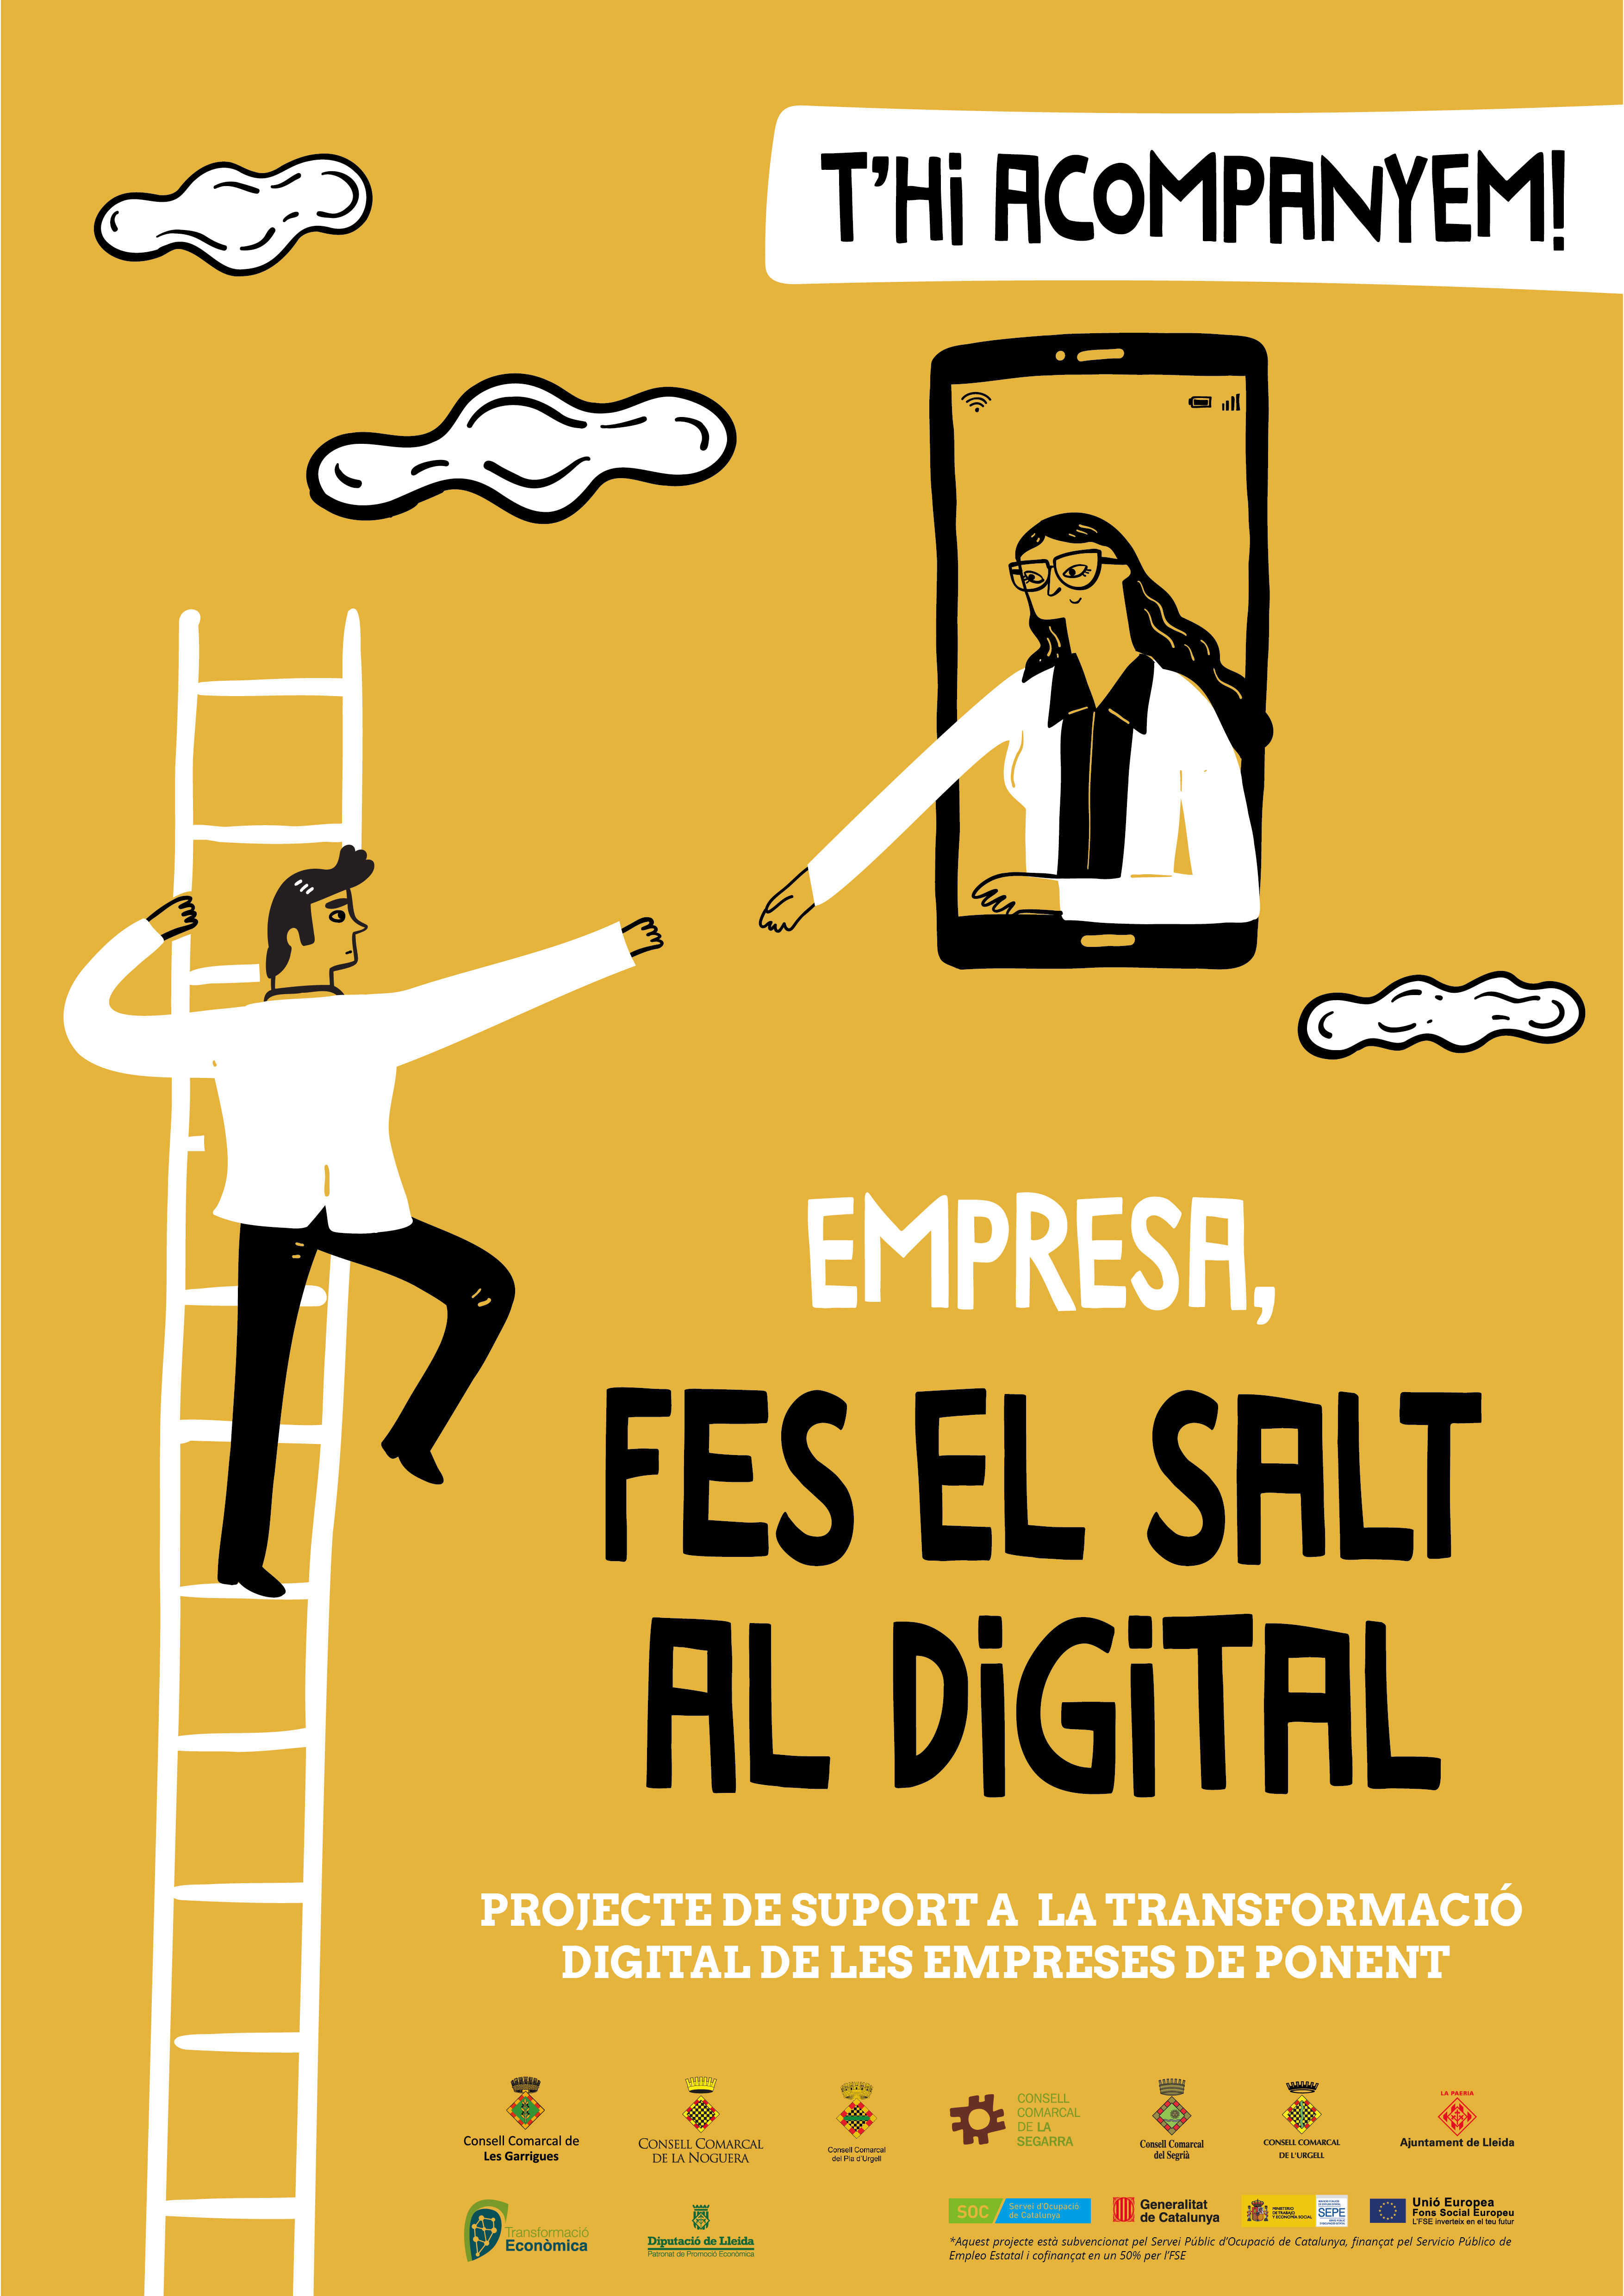 Suport a la transformació digital de les empreses de Ponent a través de la campanya “Empresa, fes el salt al digital”